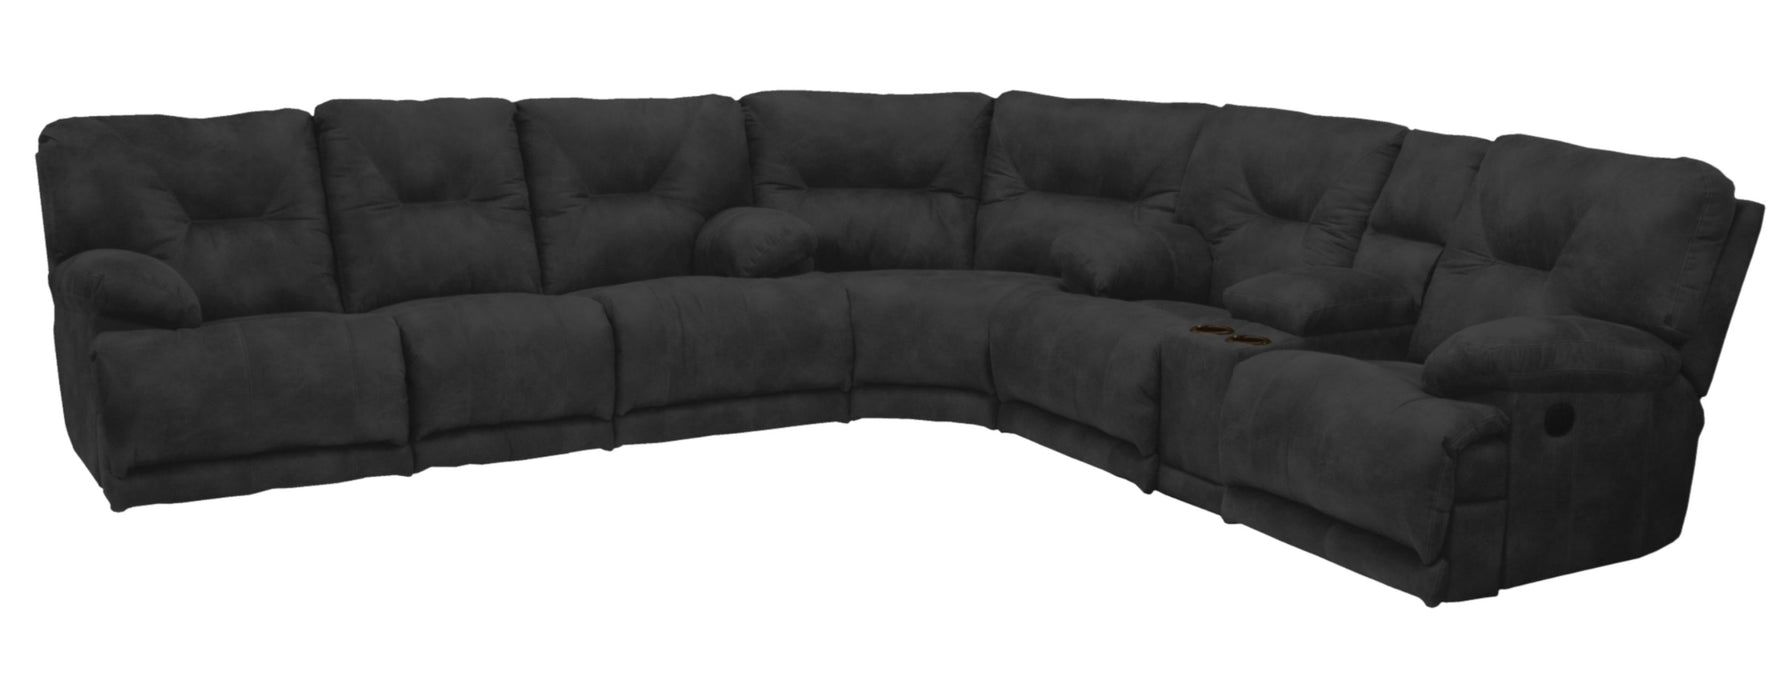 Voyager - Lay Flat Reclining Sofa